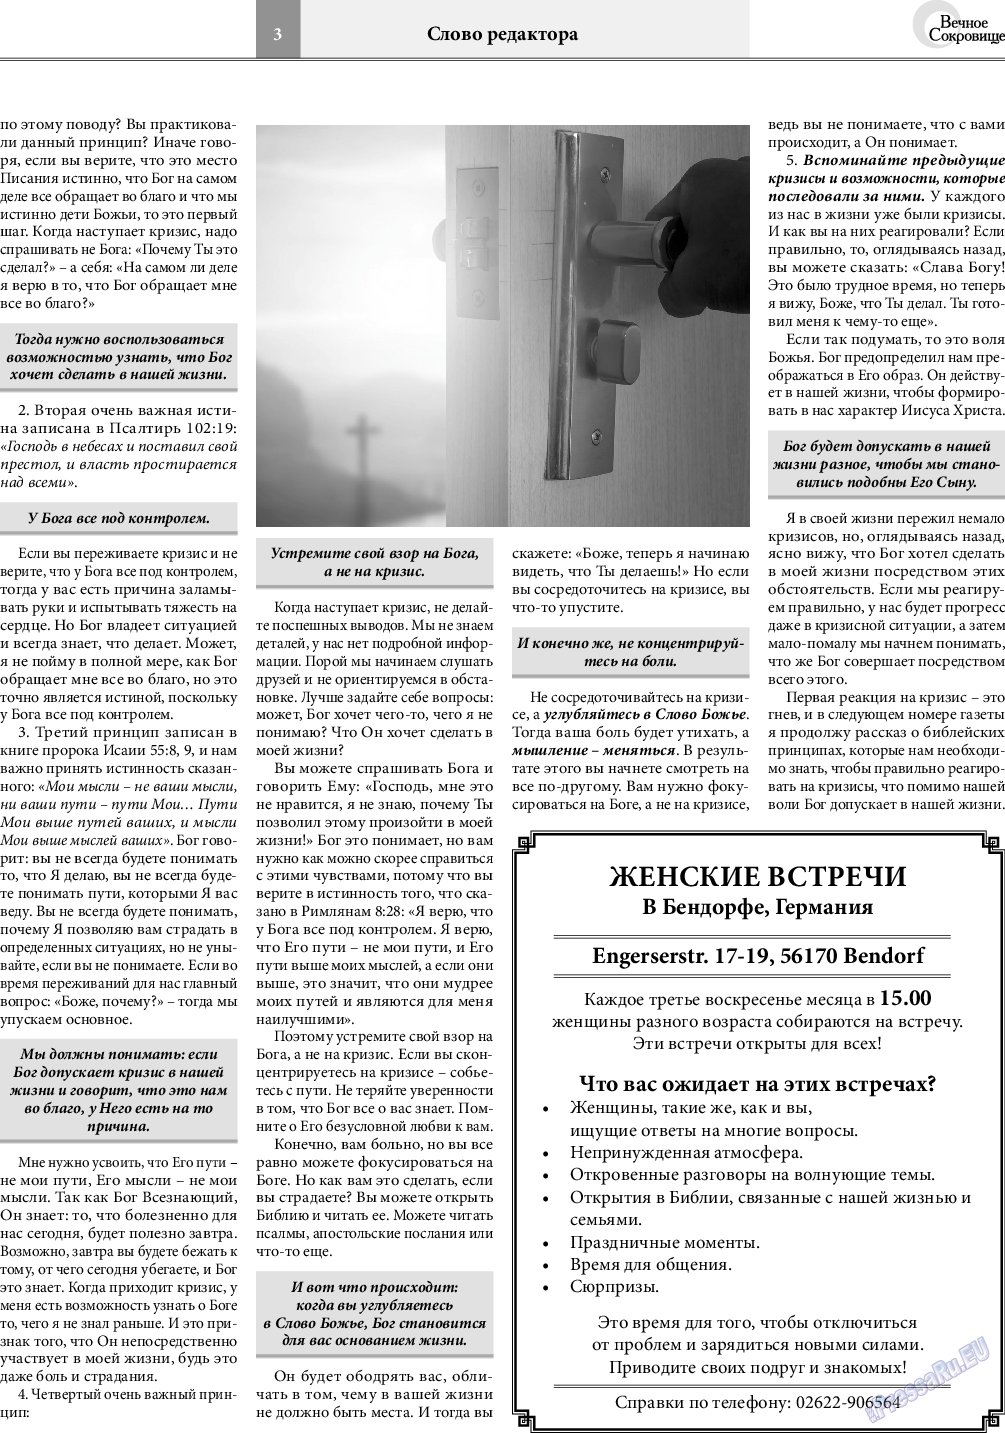 Вечное сокровище, газета. 2020 №1 стр.3